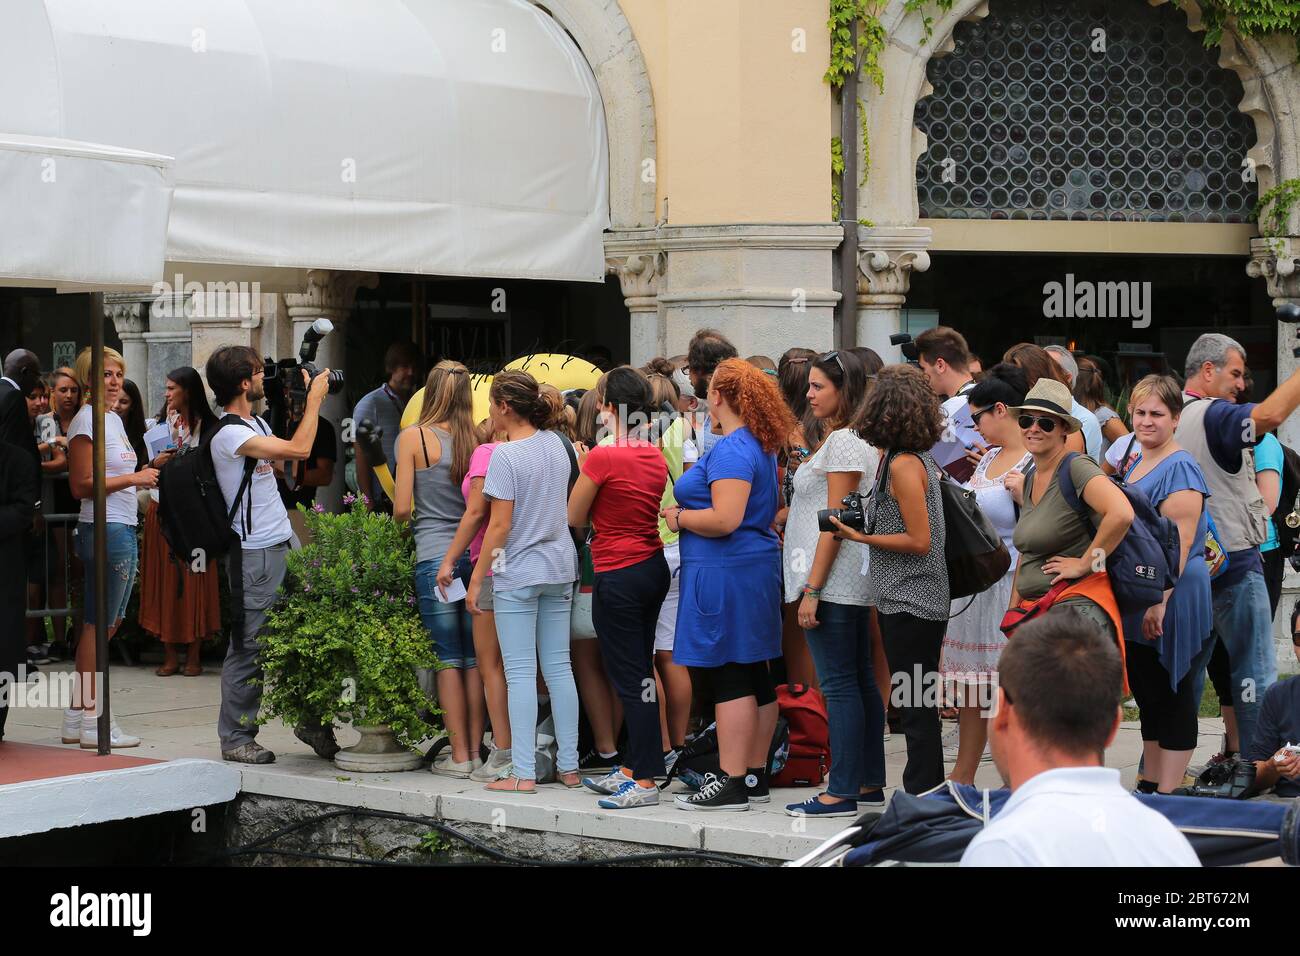 VENEZIA, ITALIA - 01 SETTEMBRE: I fan di Daniel Radcliffe partecipano al giorno 5 del 70° Festival del Cinema di Venezia il 1° settembre 2013 a Venezia, Italia Foto Stock